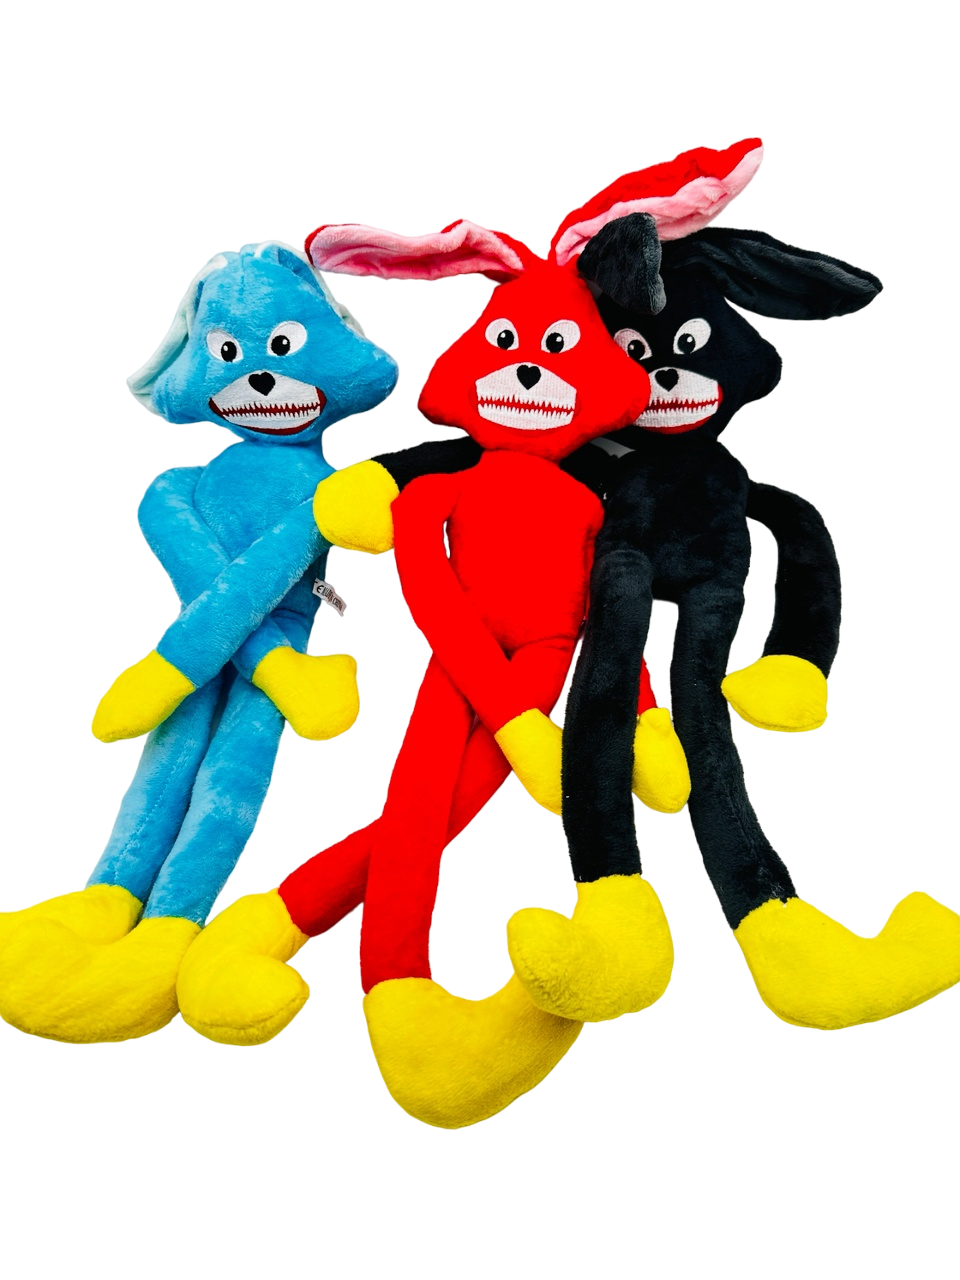 Мягкие игрушки 3 Веселых Зайца голубой, красный, черный